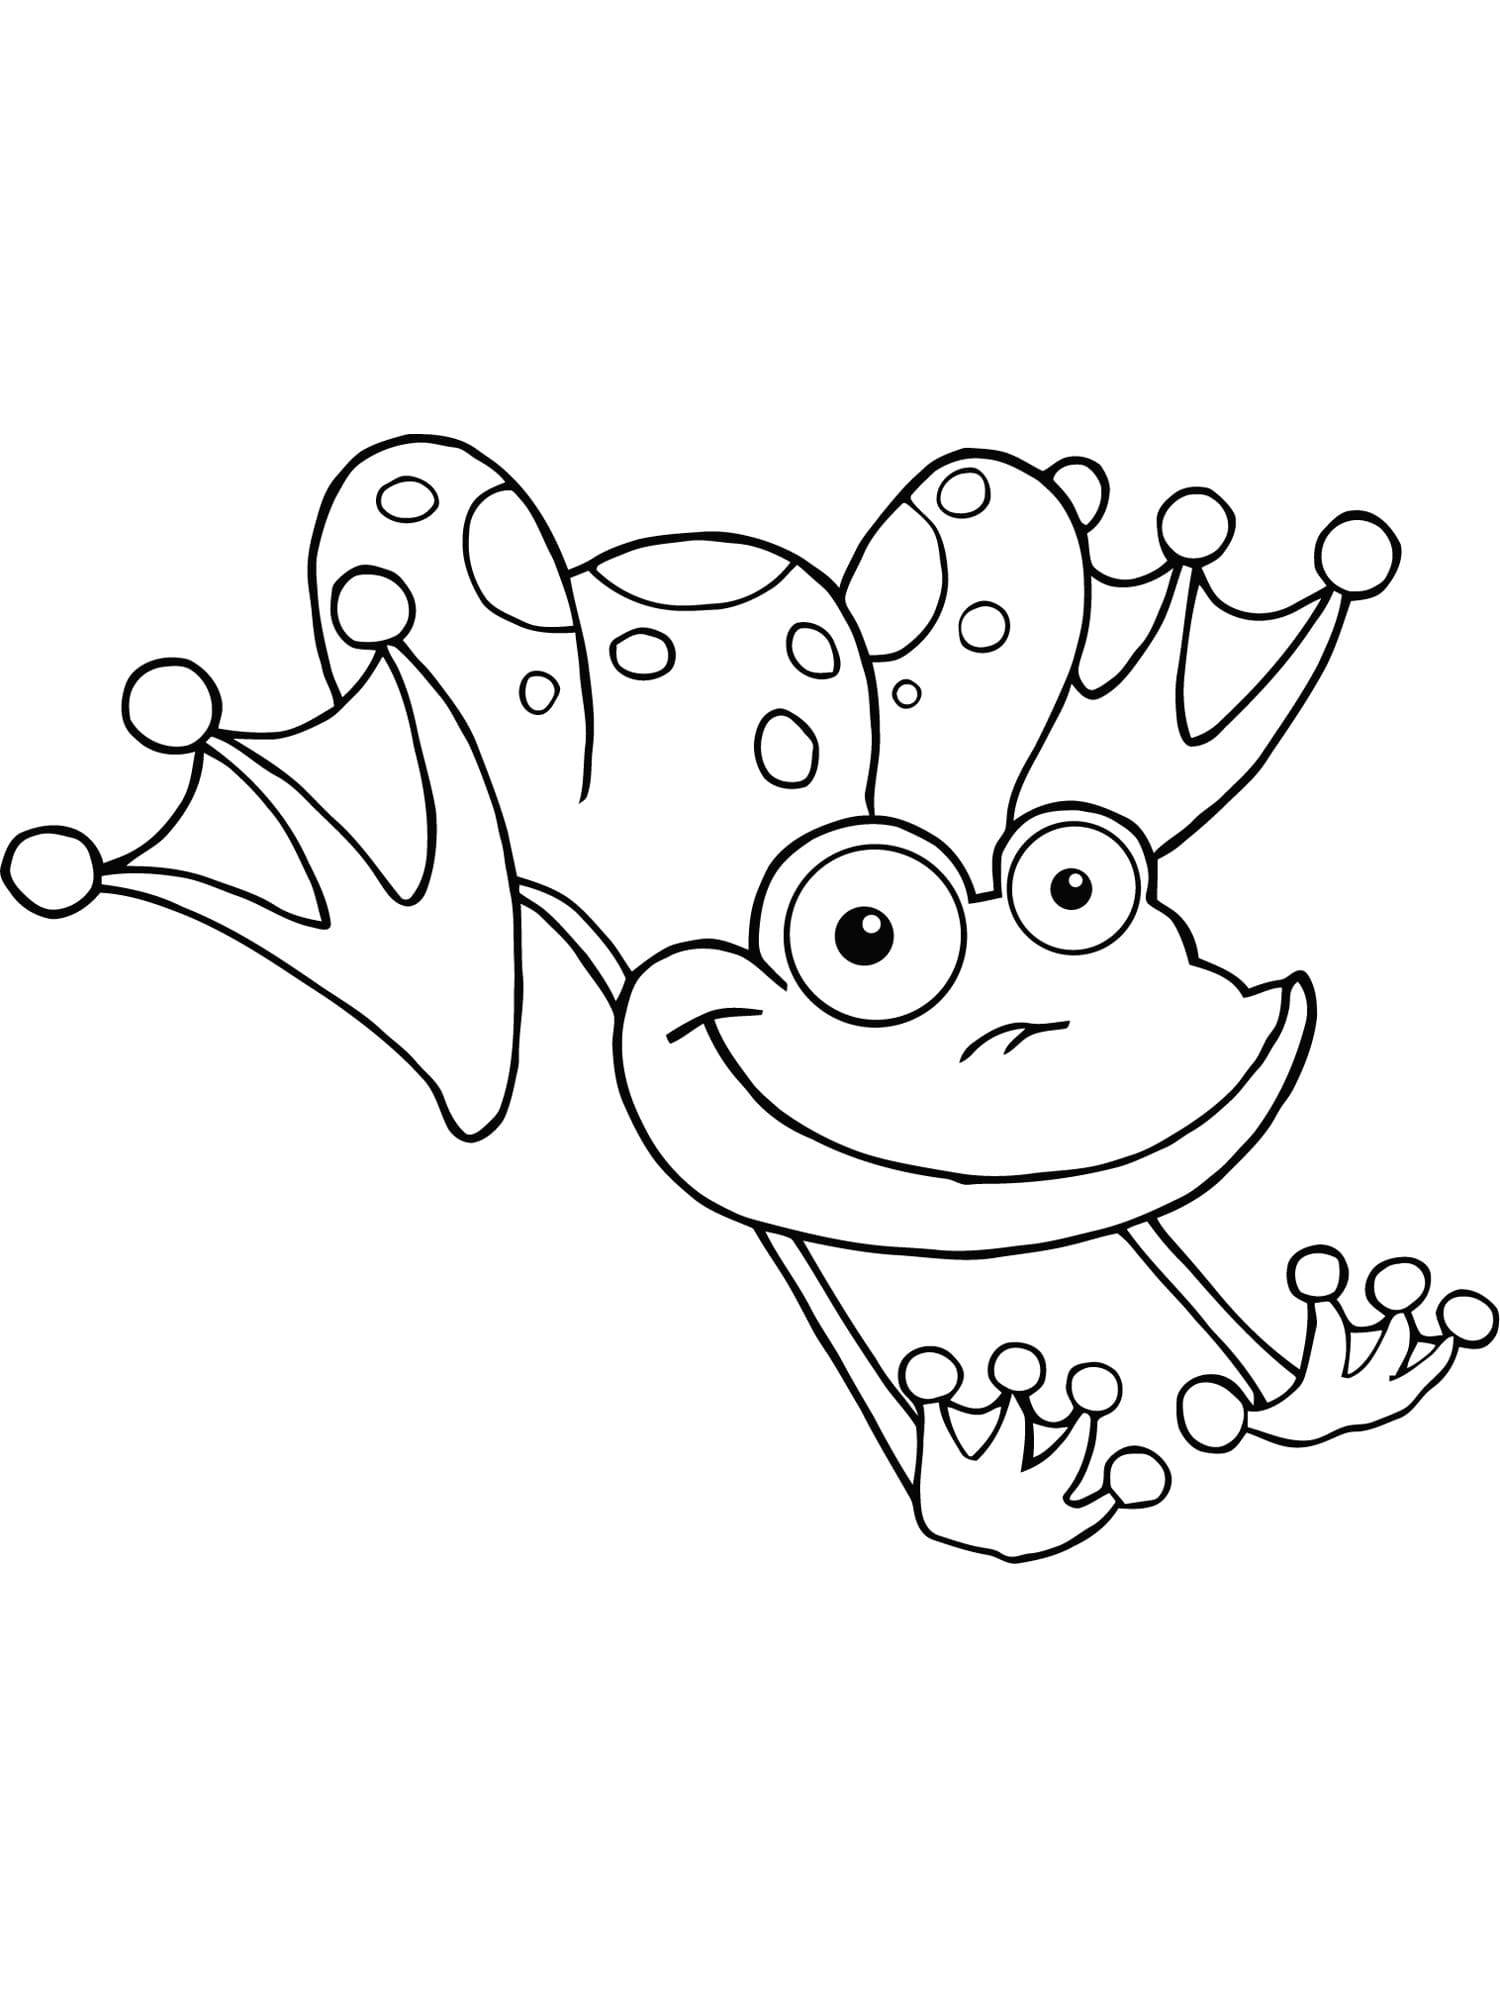 아이들을 위한 개구리 coloring page